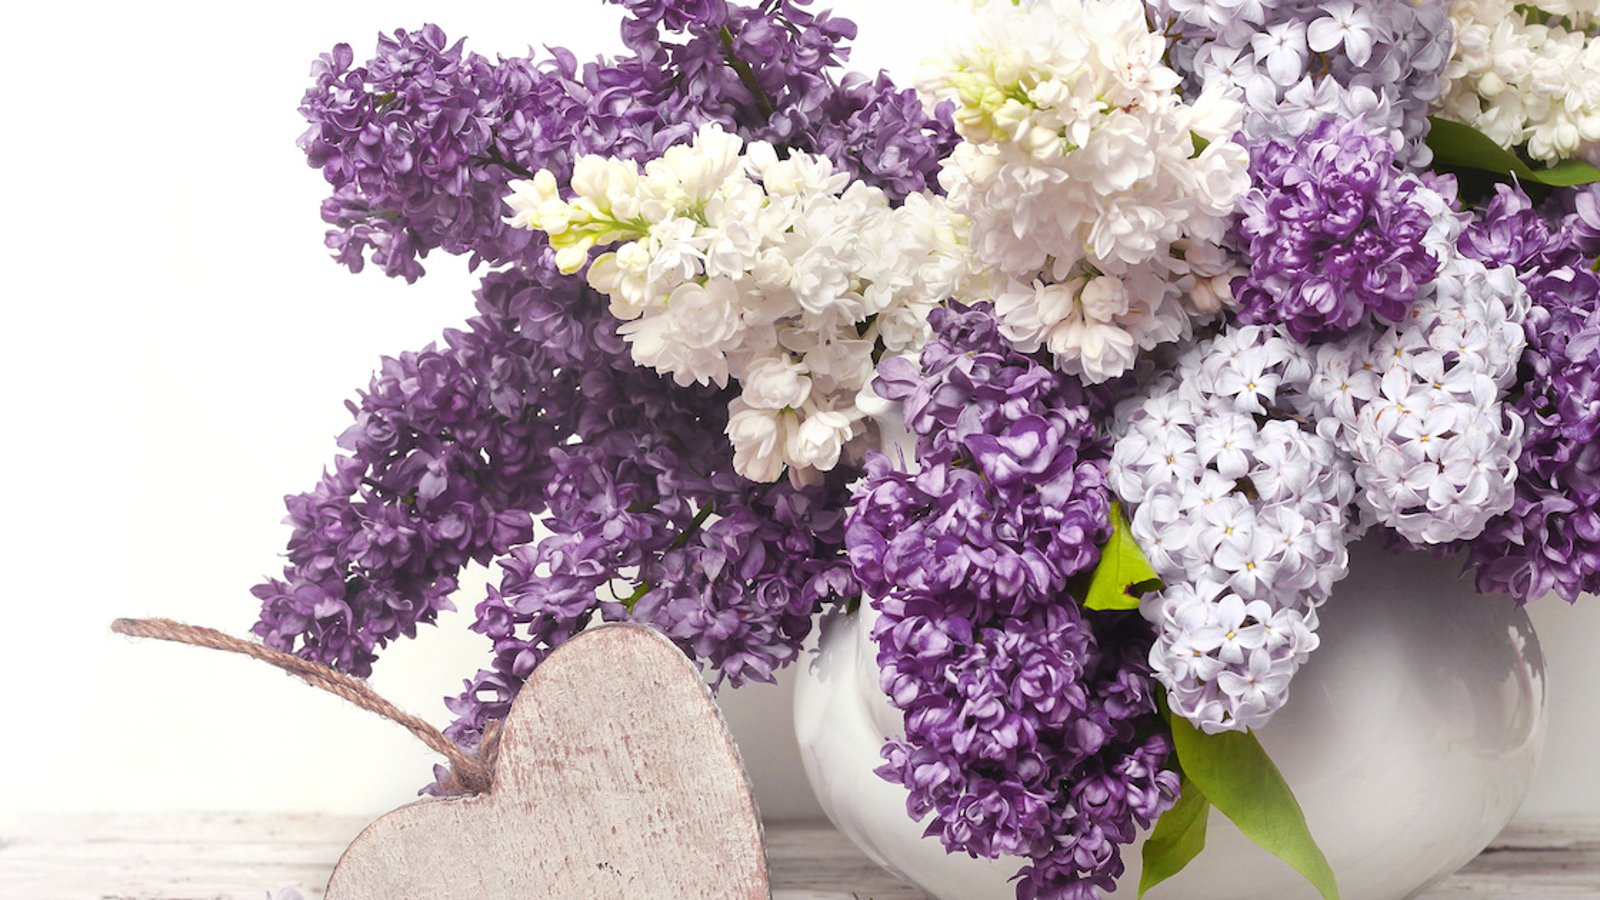 Comment empêcher les lilas de faner dans un vase